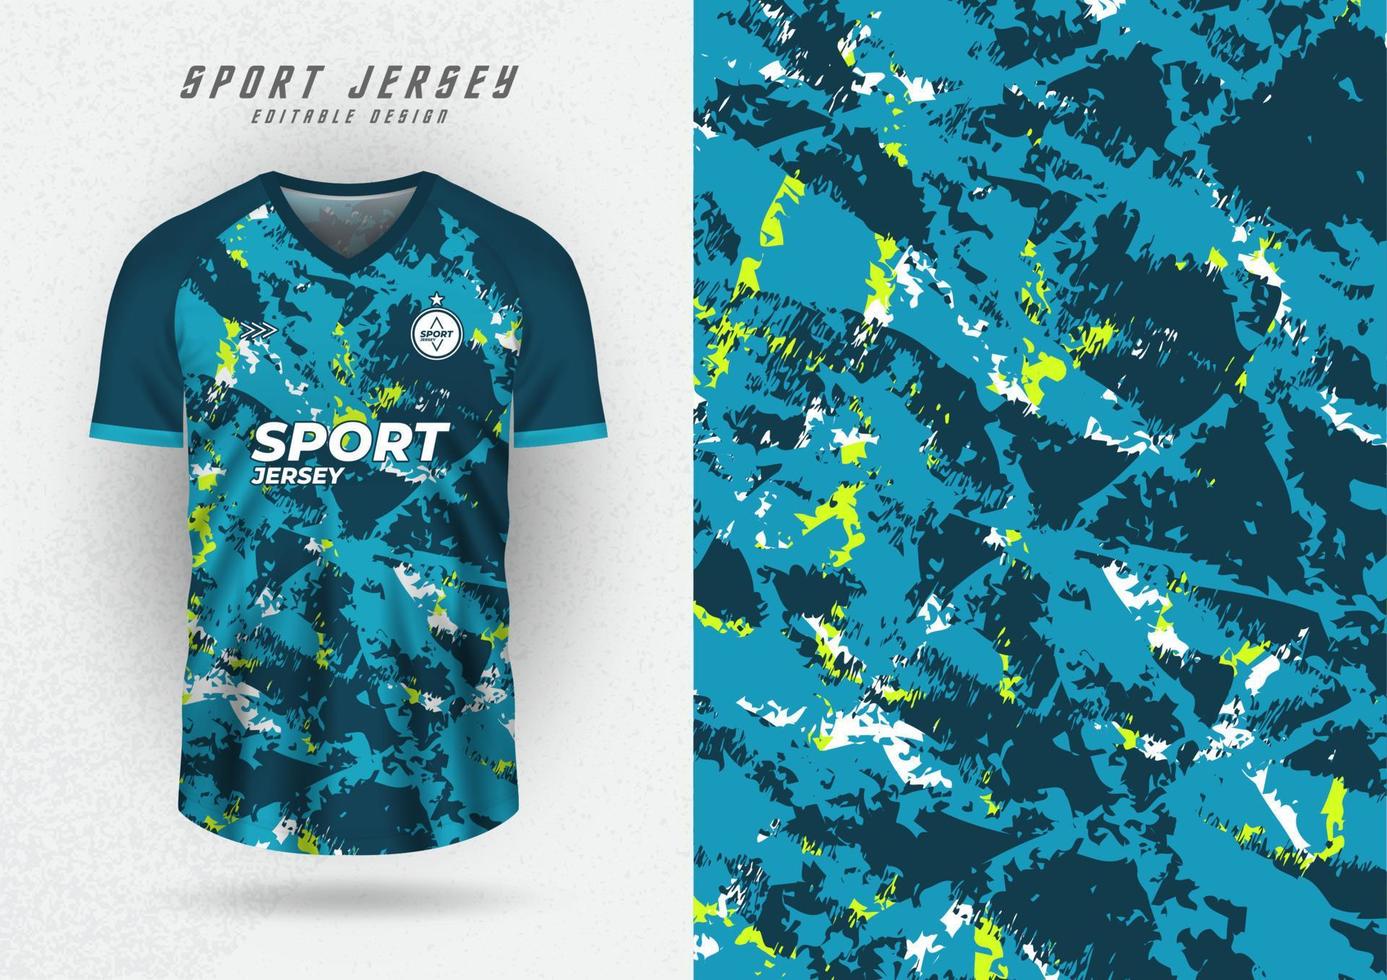 bakgrund mock up för sport jersey, race jersey, löparskjorta, grunge mönster för sublimering. vektor